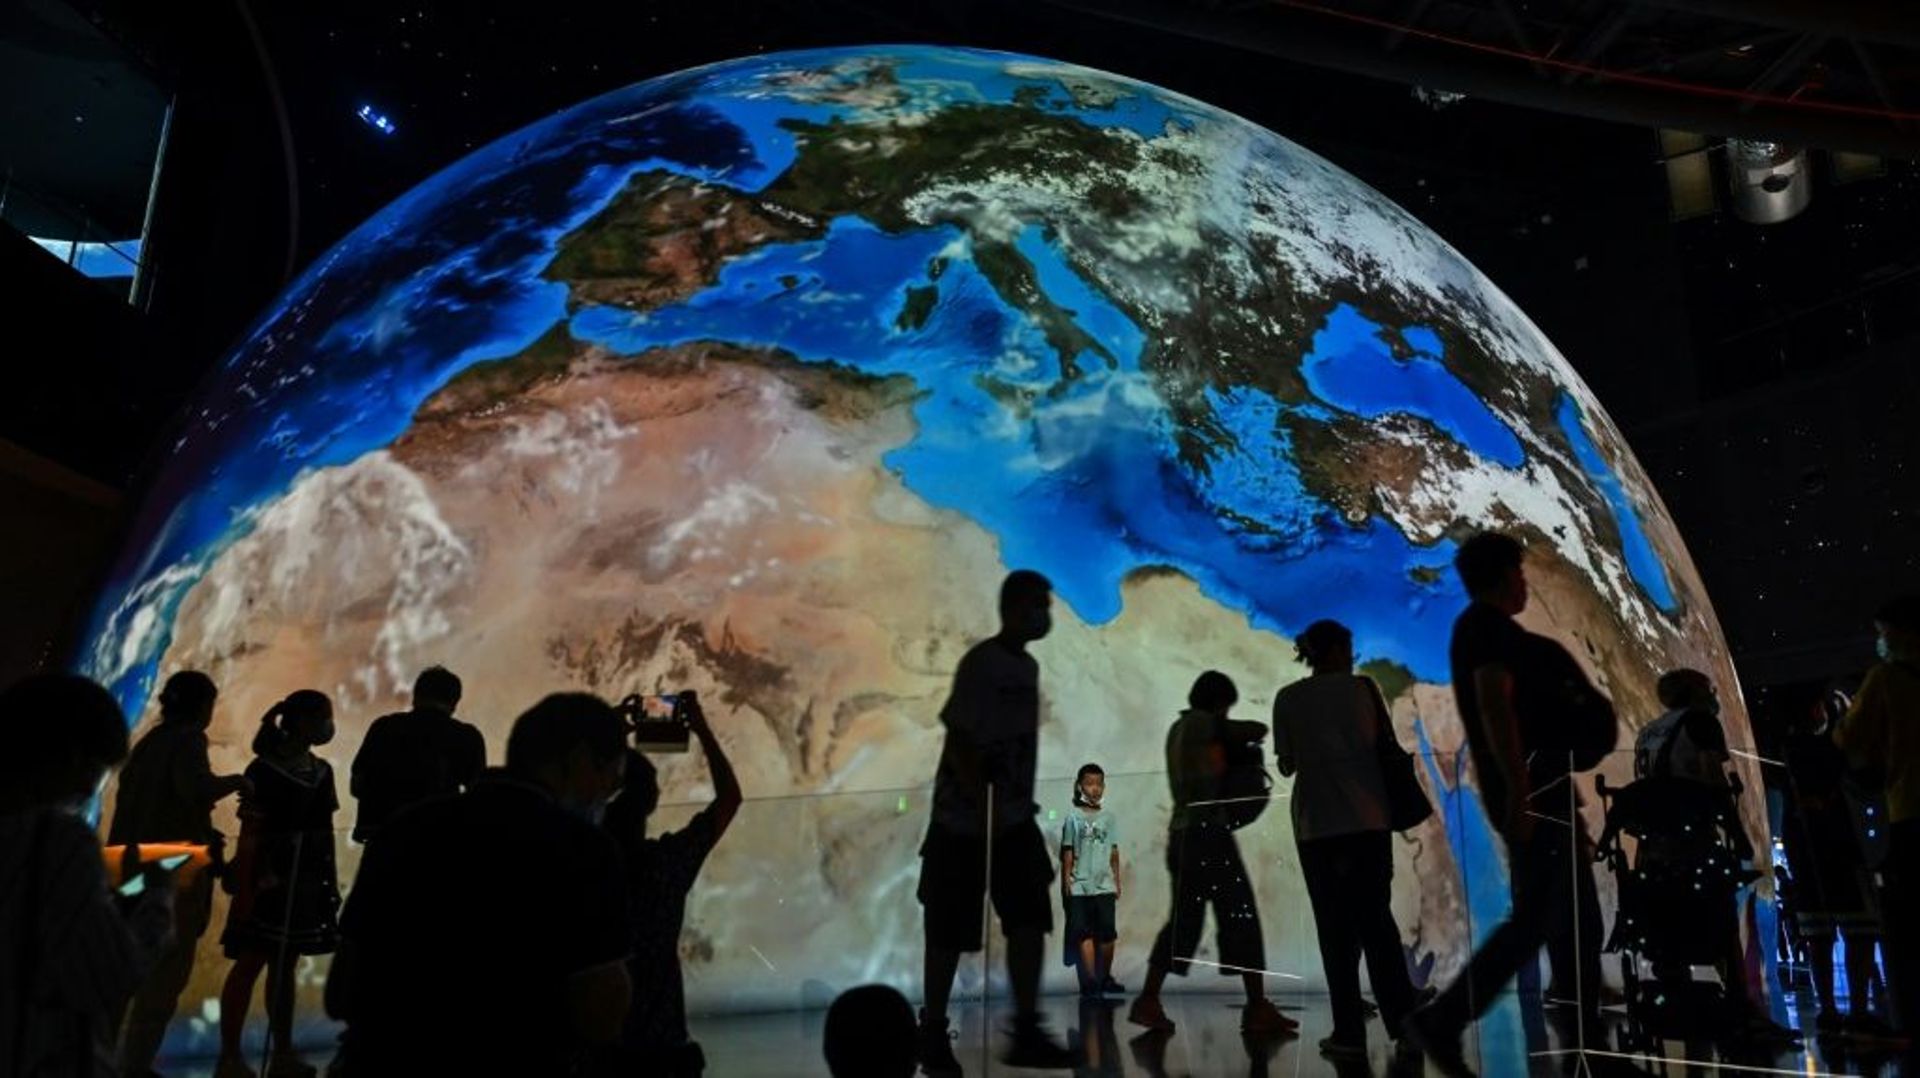 Le nouveau planetarium de Shanghai met en scène les récents exploits de la Chine dans le domaine spatial